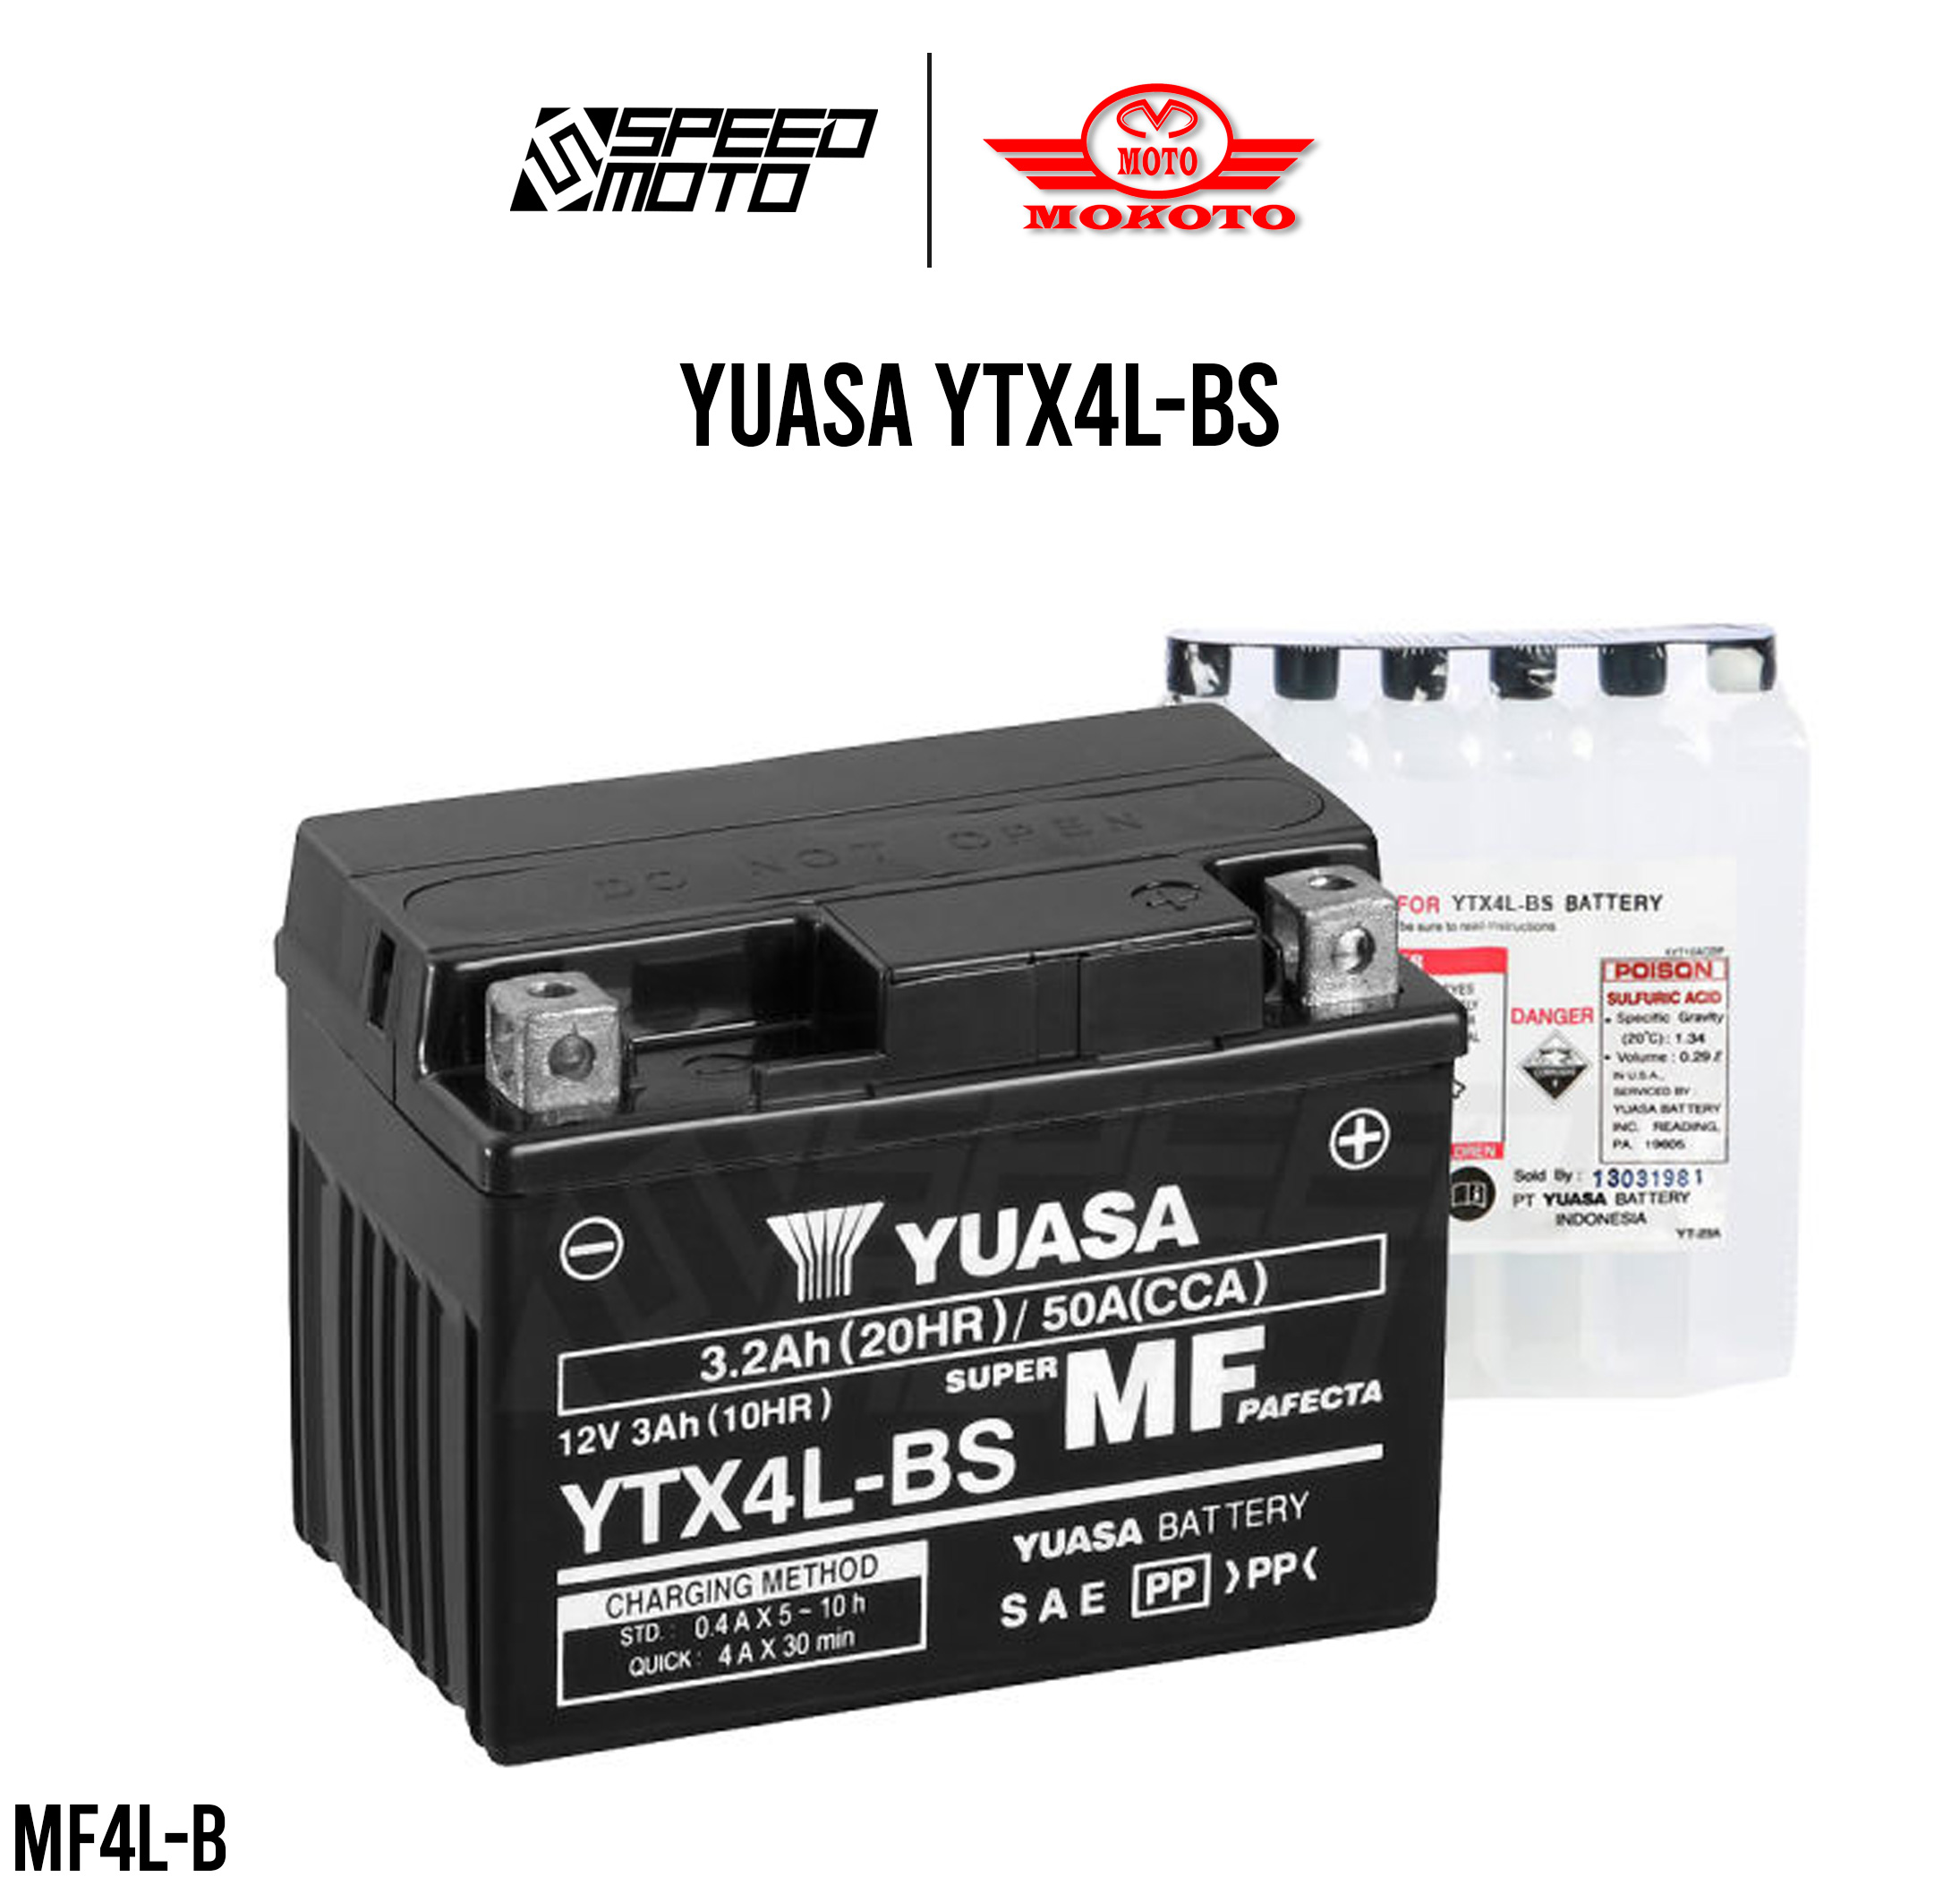 Shop Yuasa Battery Yb7bl-a online